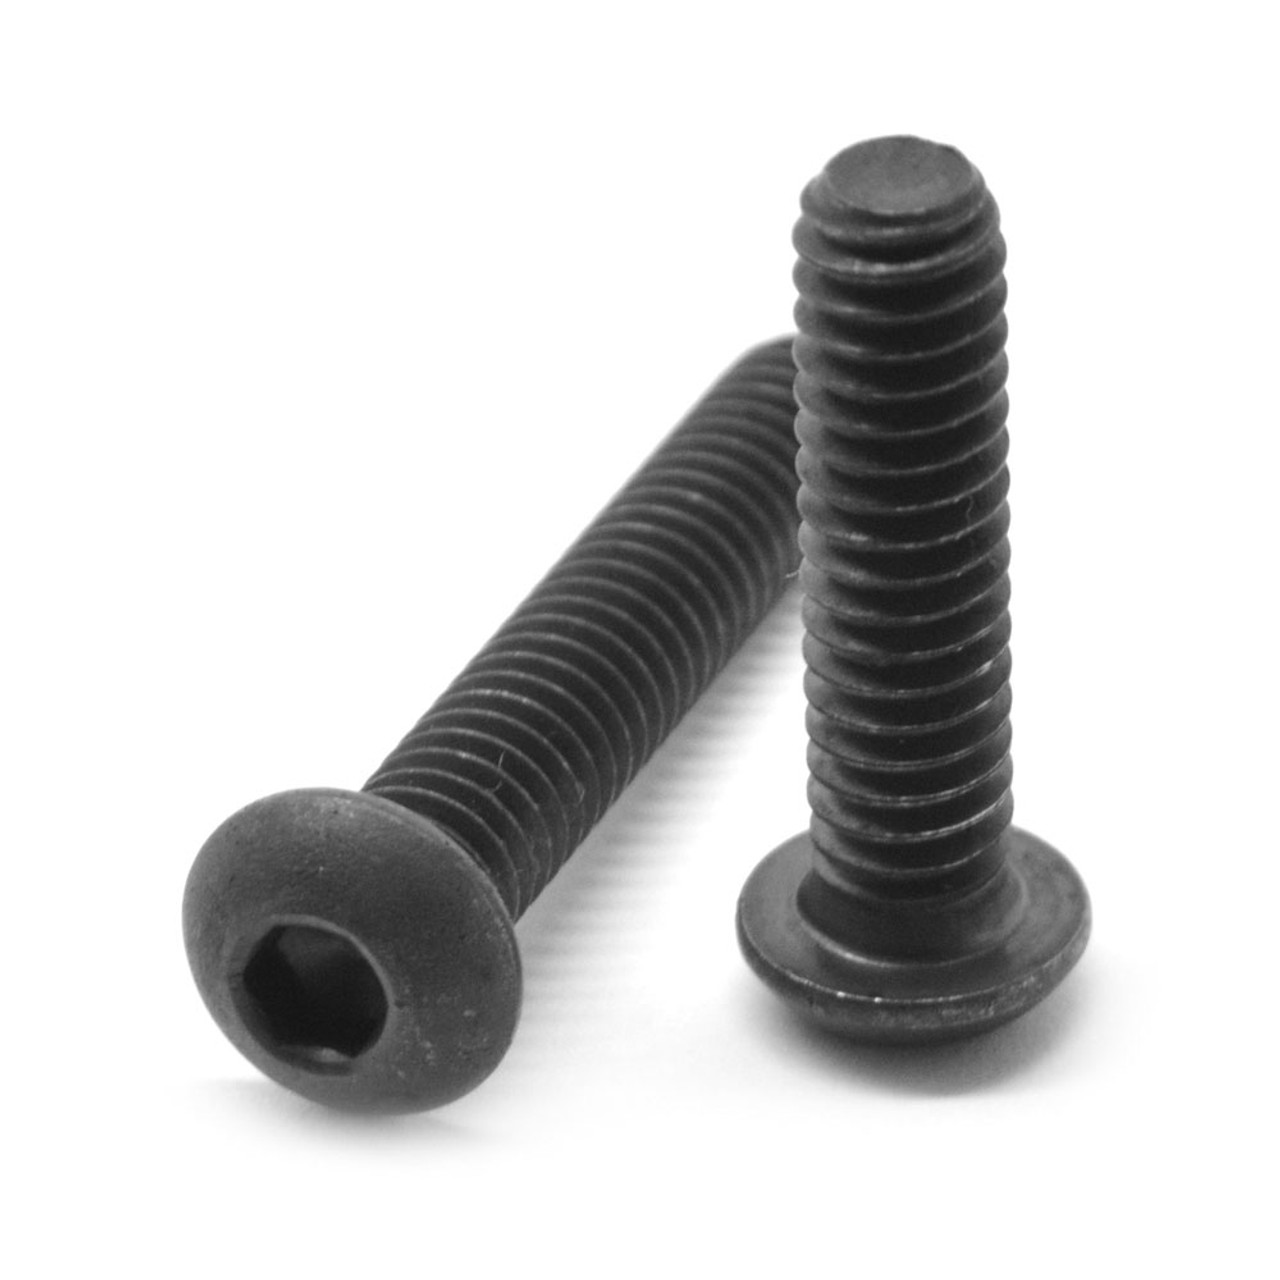 #10-24 x 3/4" (FT) Coarse Thread Socket Button Head Cap Screw Alloy Steel Black Oxide